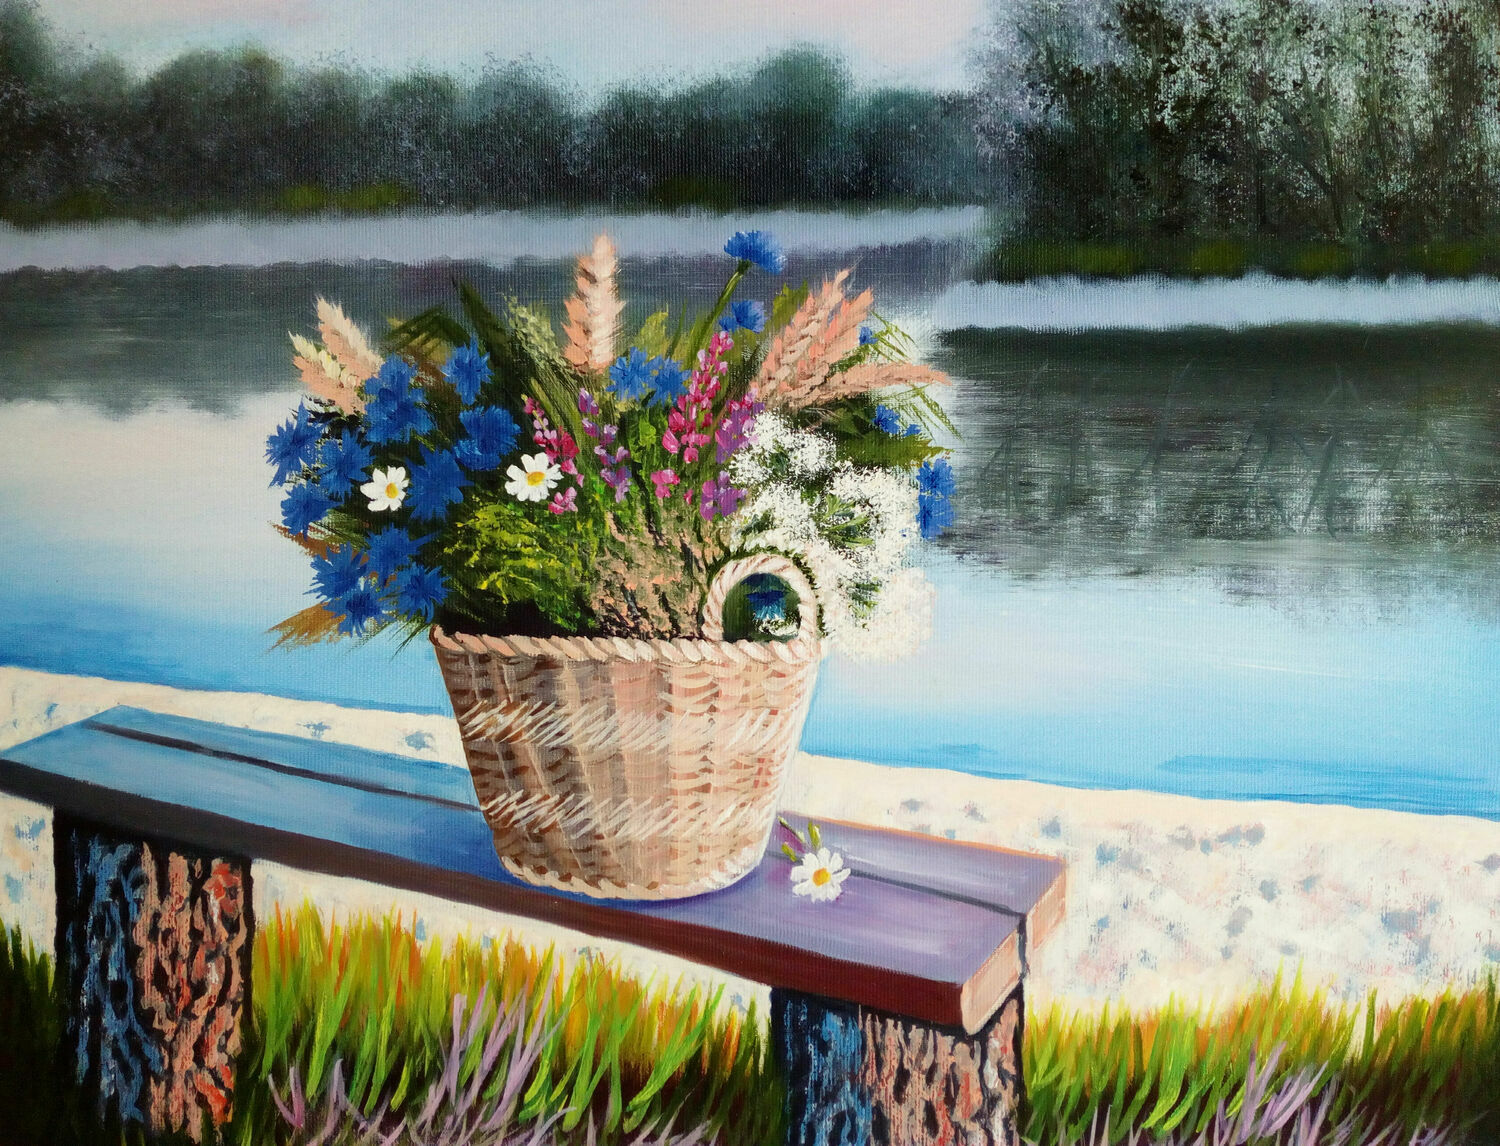  Картина маслом "Полевые цветы.Утро на озере", Картины, Челябинск,  Фото №1